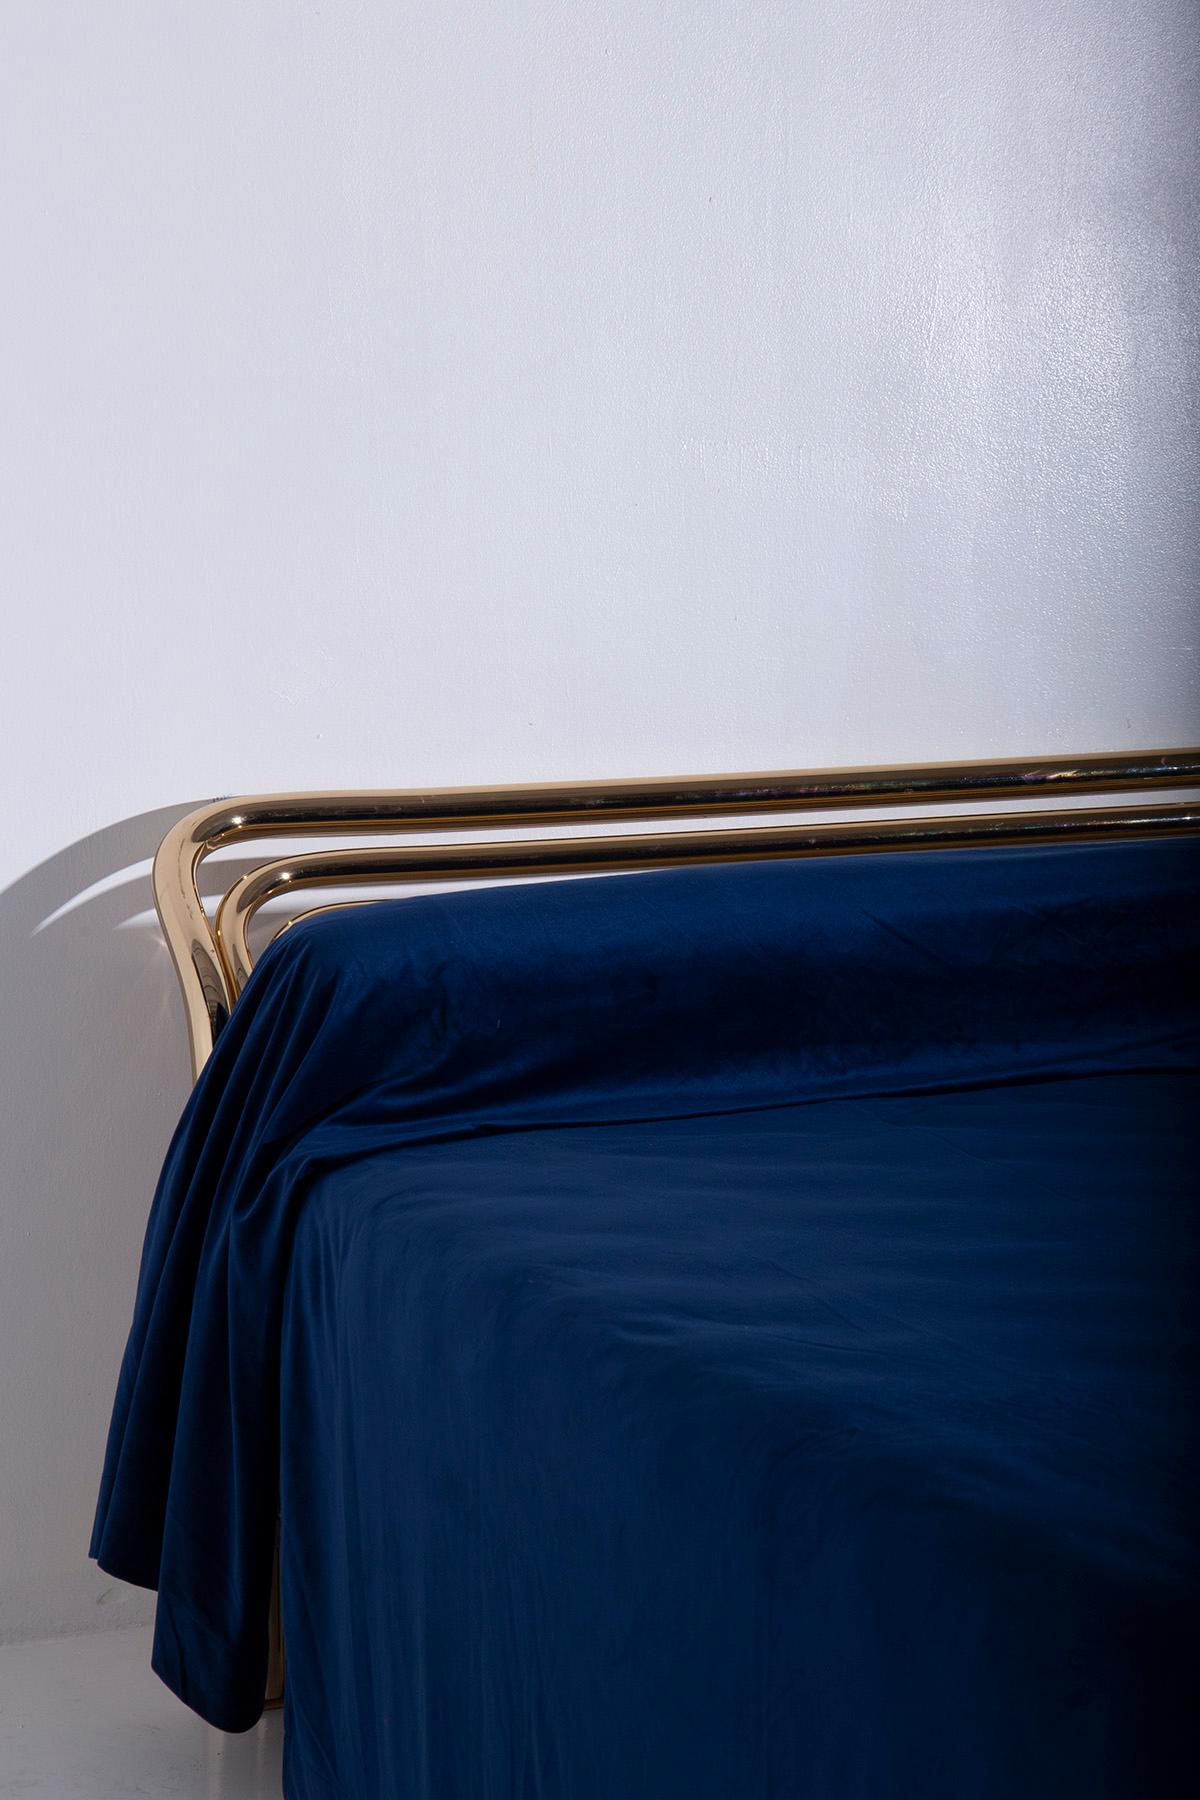 Versetzen Sie sich zurück in die glamourösen 1970er Jahre mit diesem exquisiten italienischen Doppelbett, das von dem talentierten Lucino Frigerio entworfen wurde und von demselben berühmten Hersteller stammt. Sein Wesen ist aus glänzendem